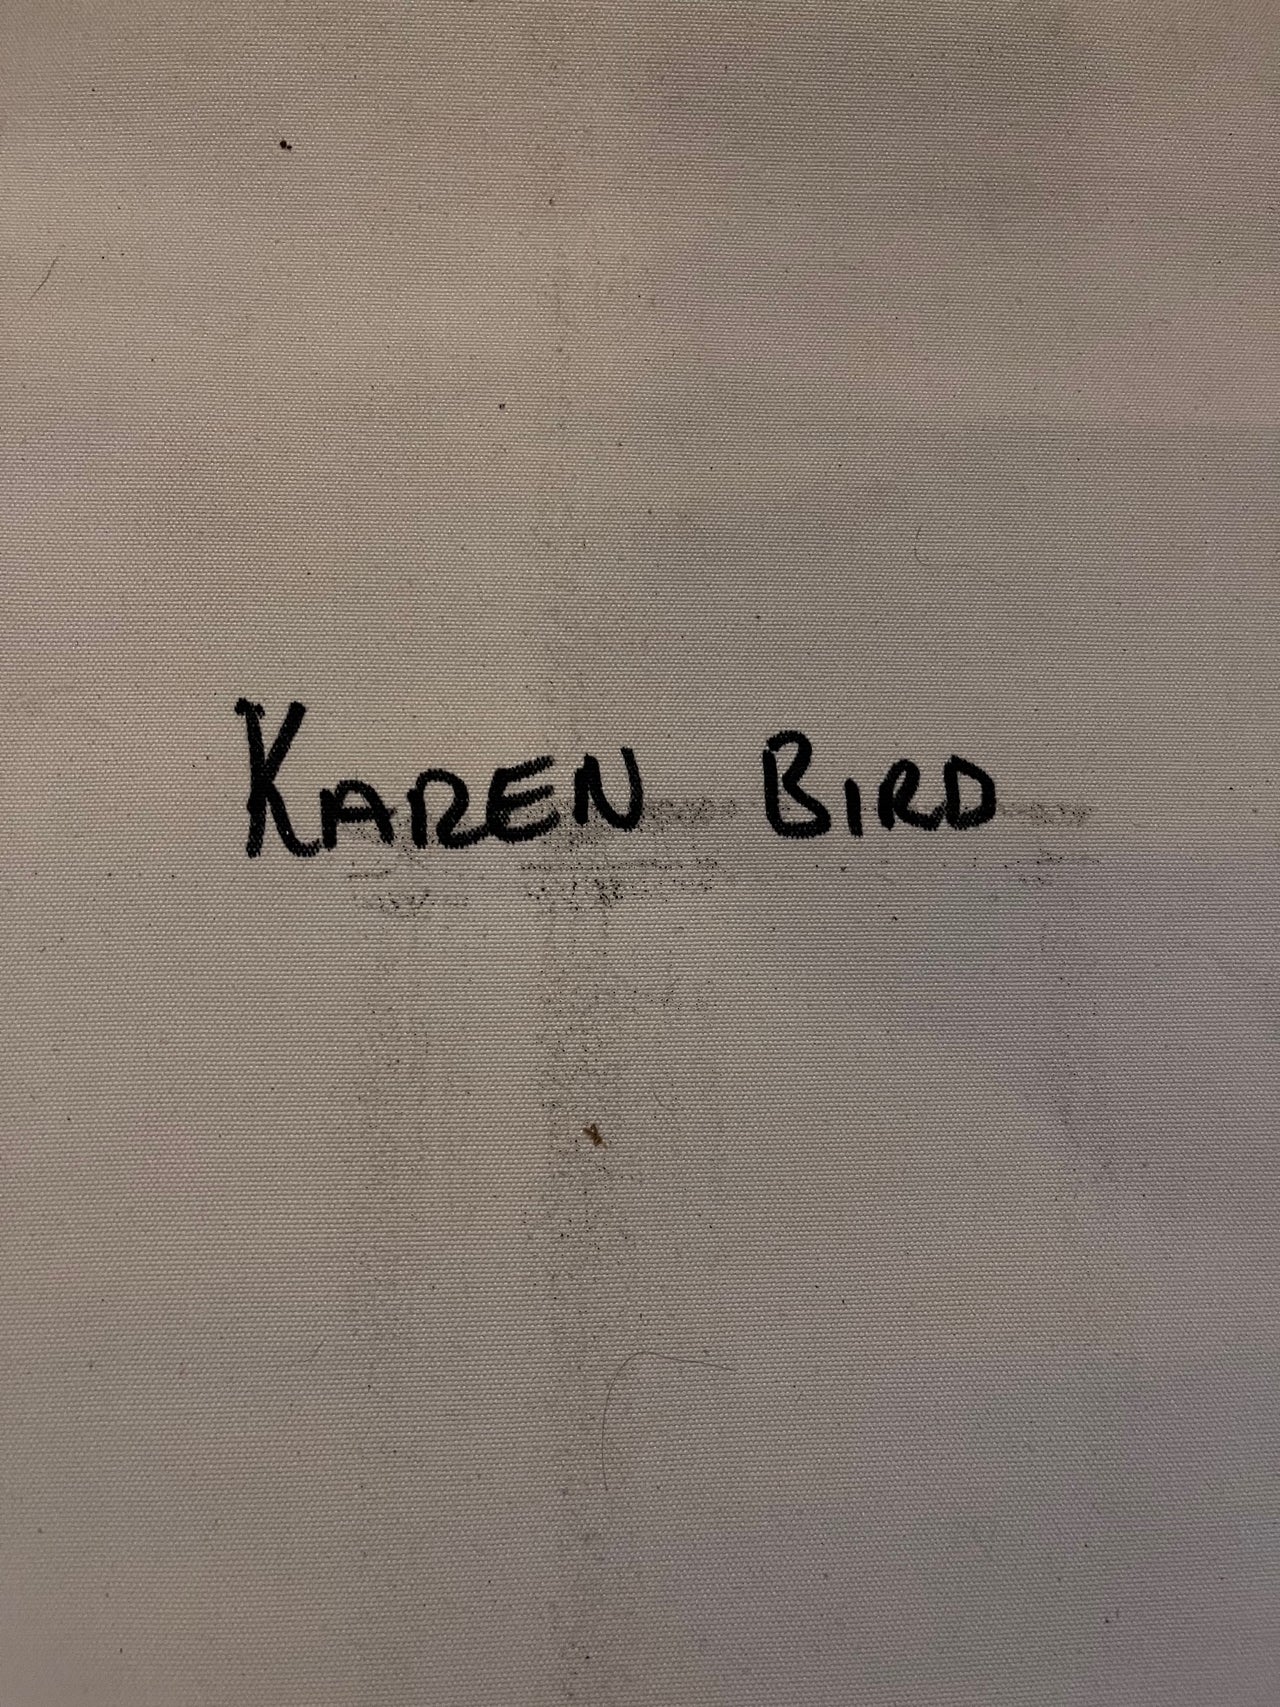 Karen Bird, Aboriginal Art, Indigenous Art, Women's Ceremony, Utopia Art, dreamtime